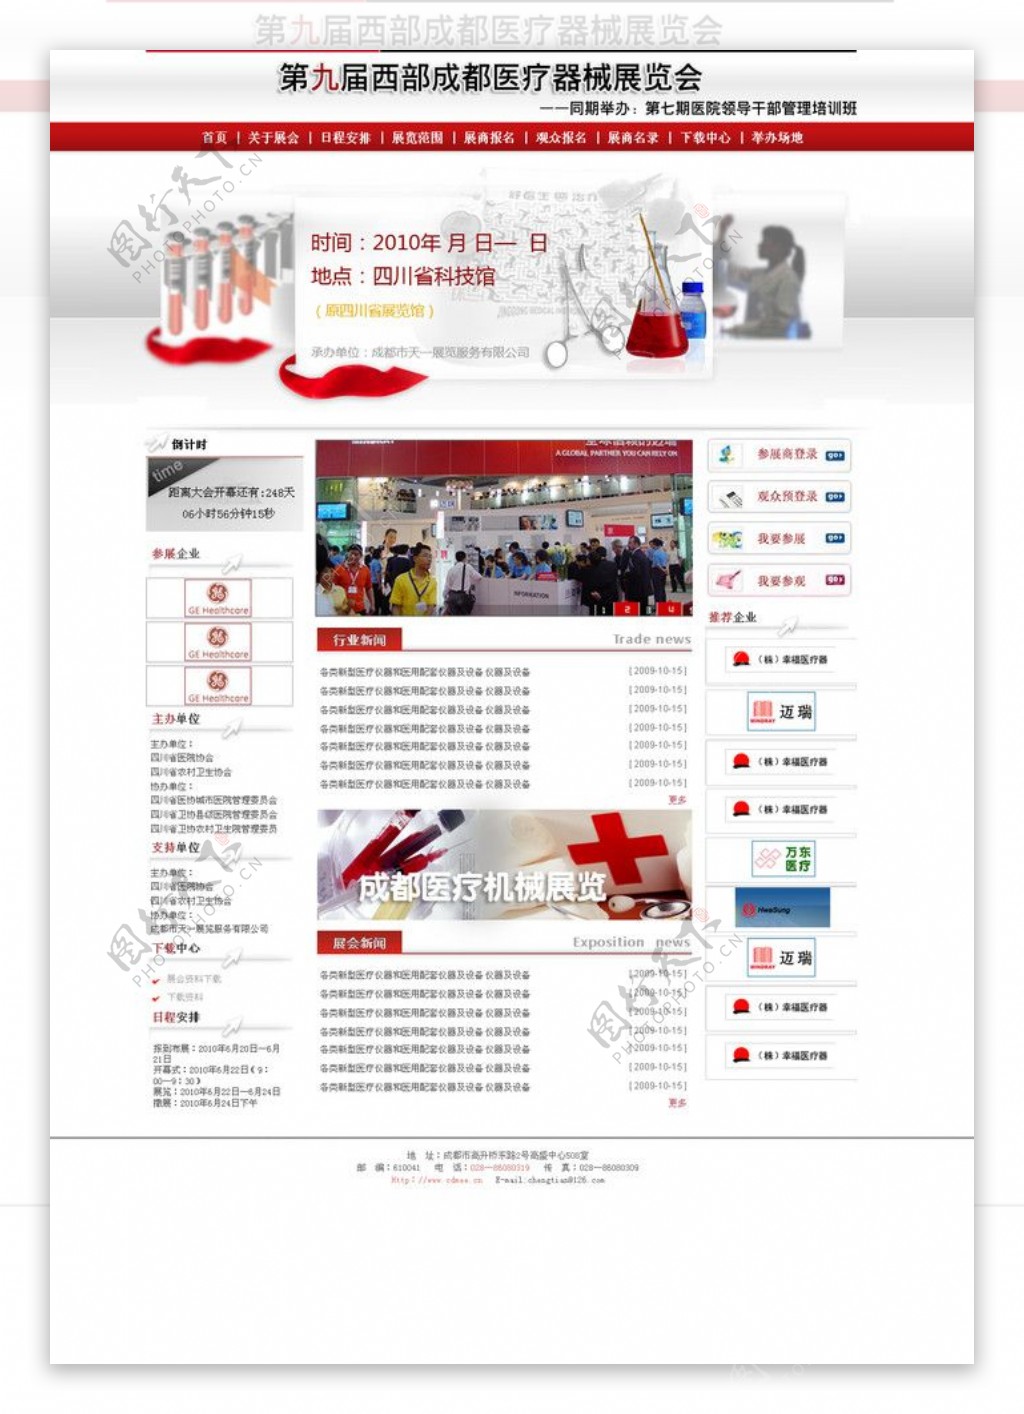 展会展览红色模板网页模板大气简单三列红灰色模板医疗化学模板图片